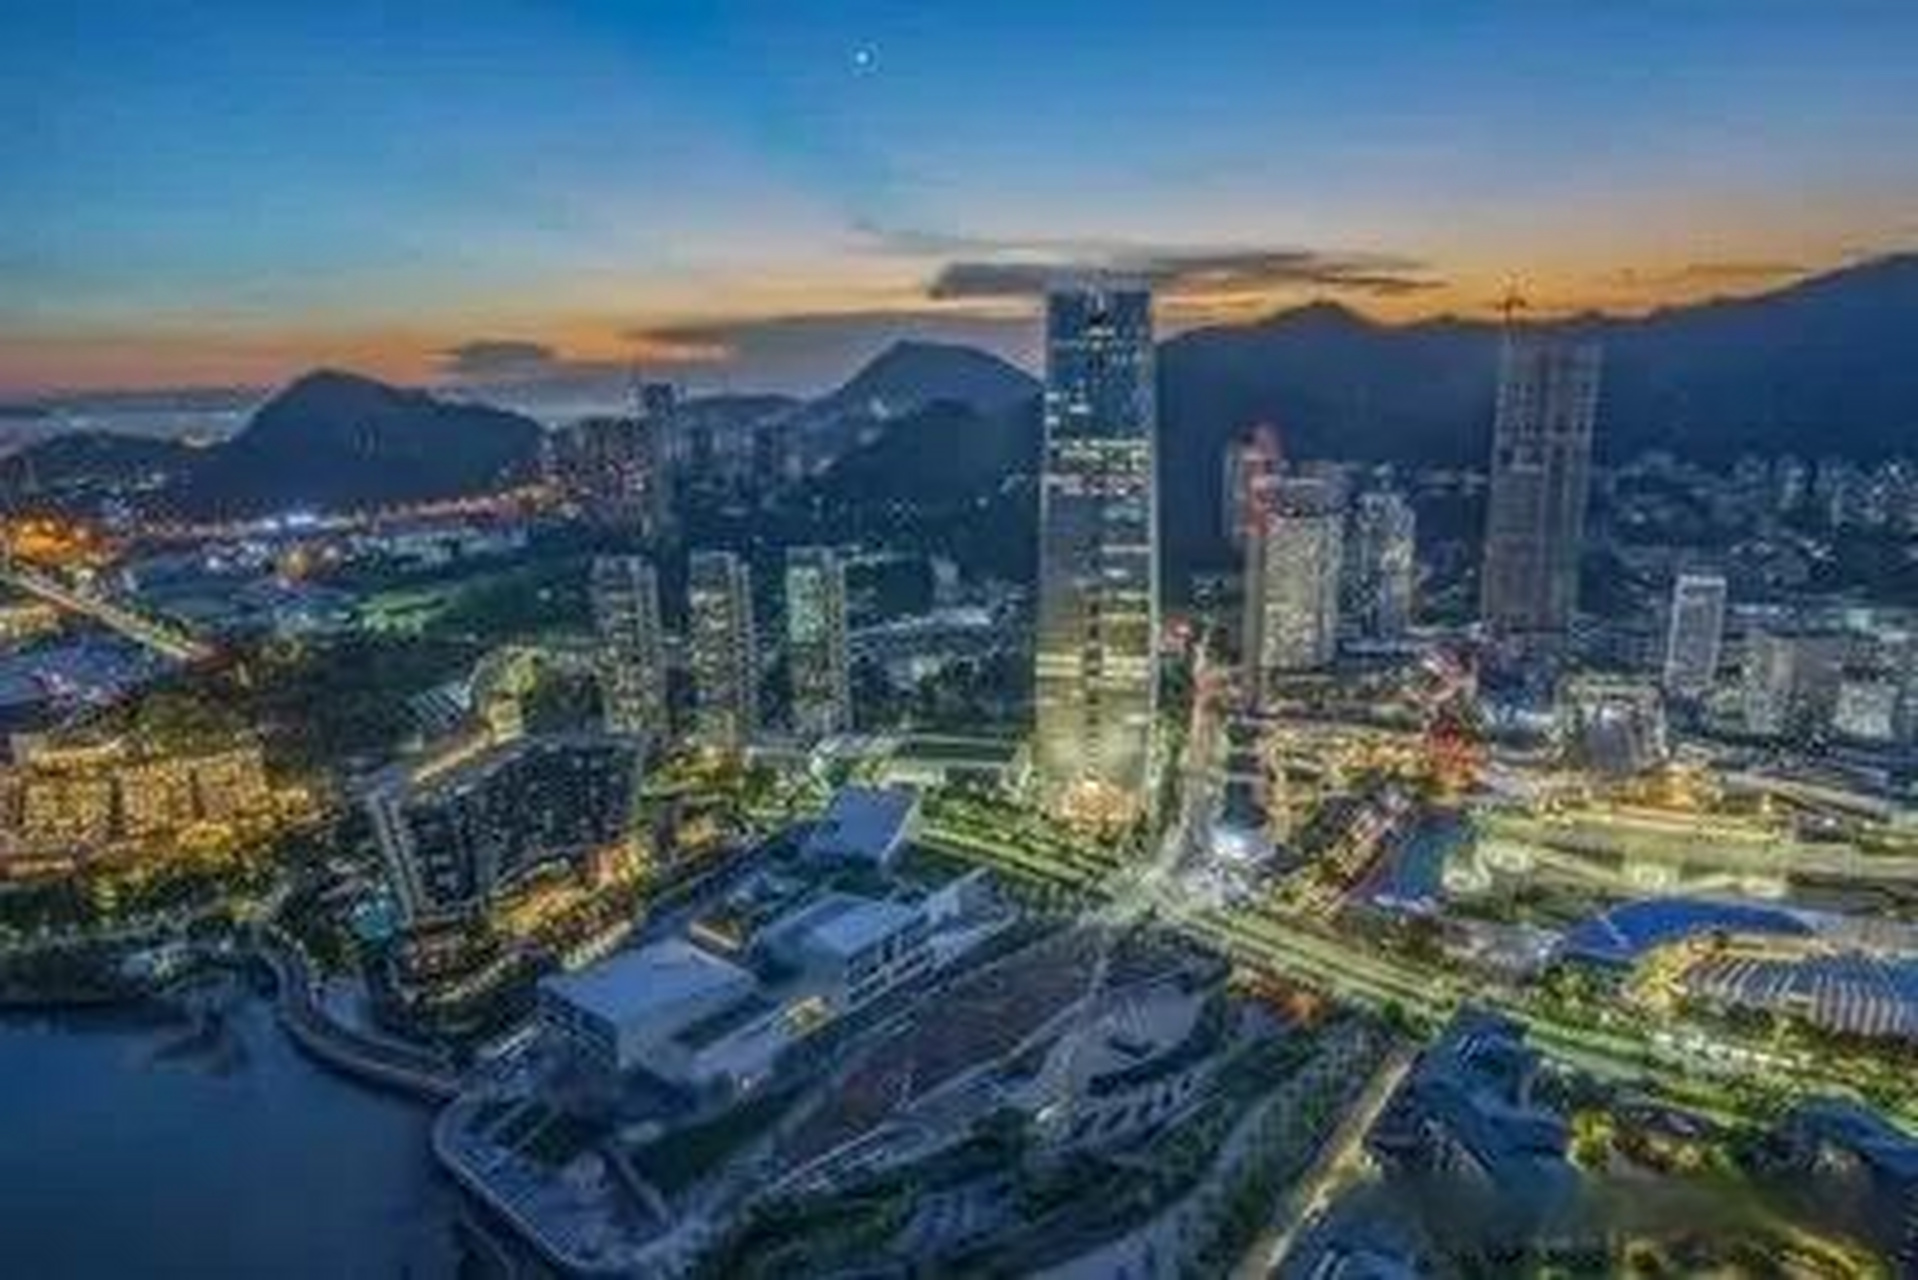 深圳是中国改革开放的先行者之一,近年来的经济发展速度也是惊人的,被